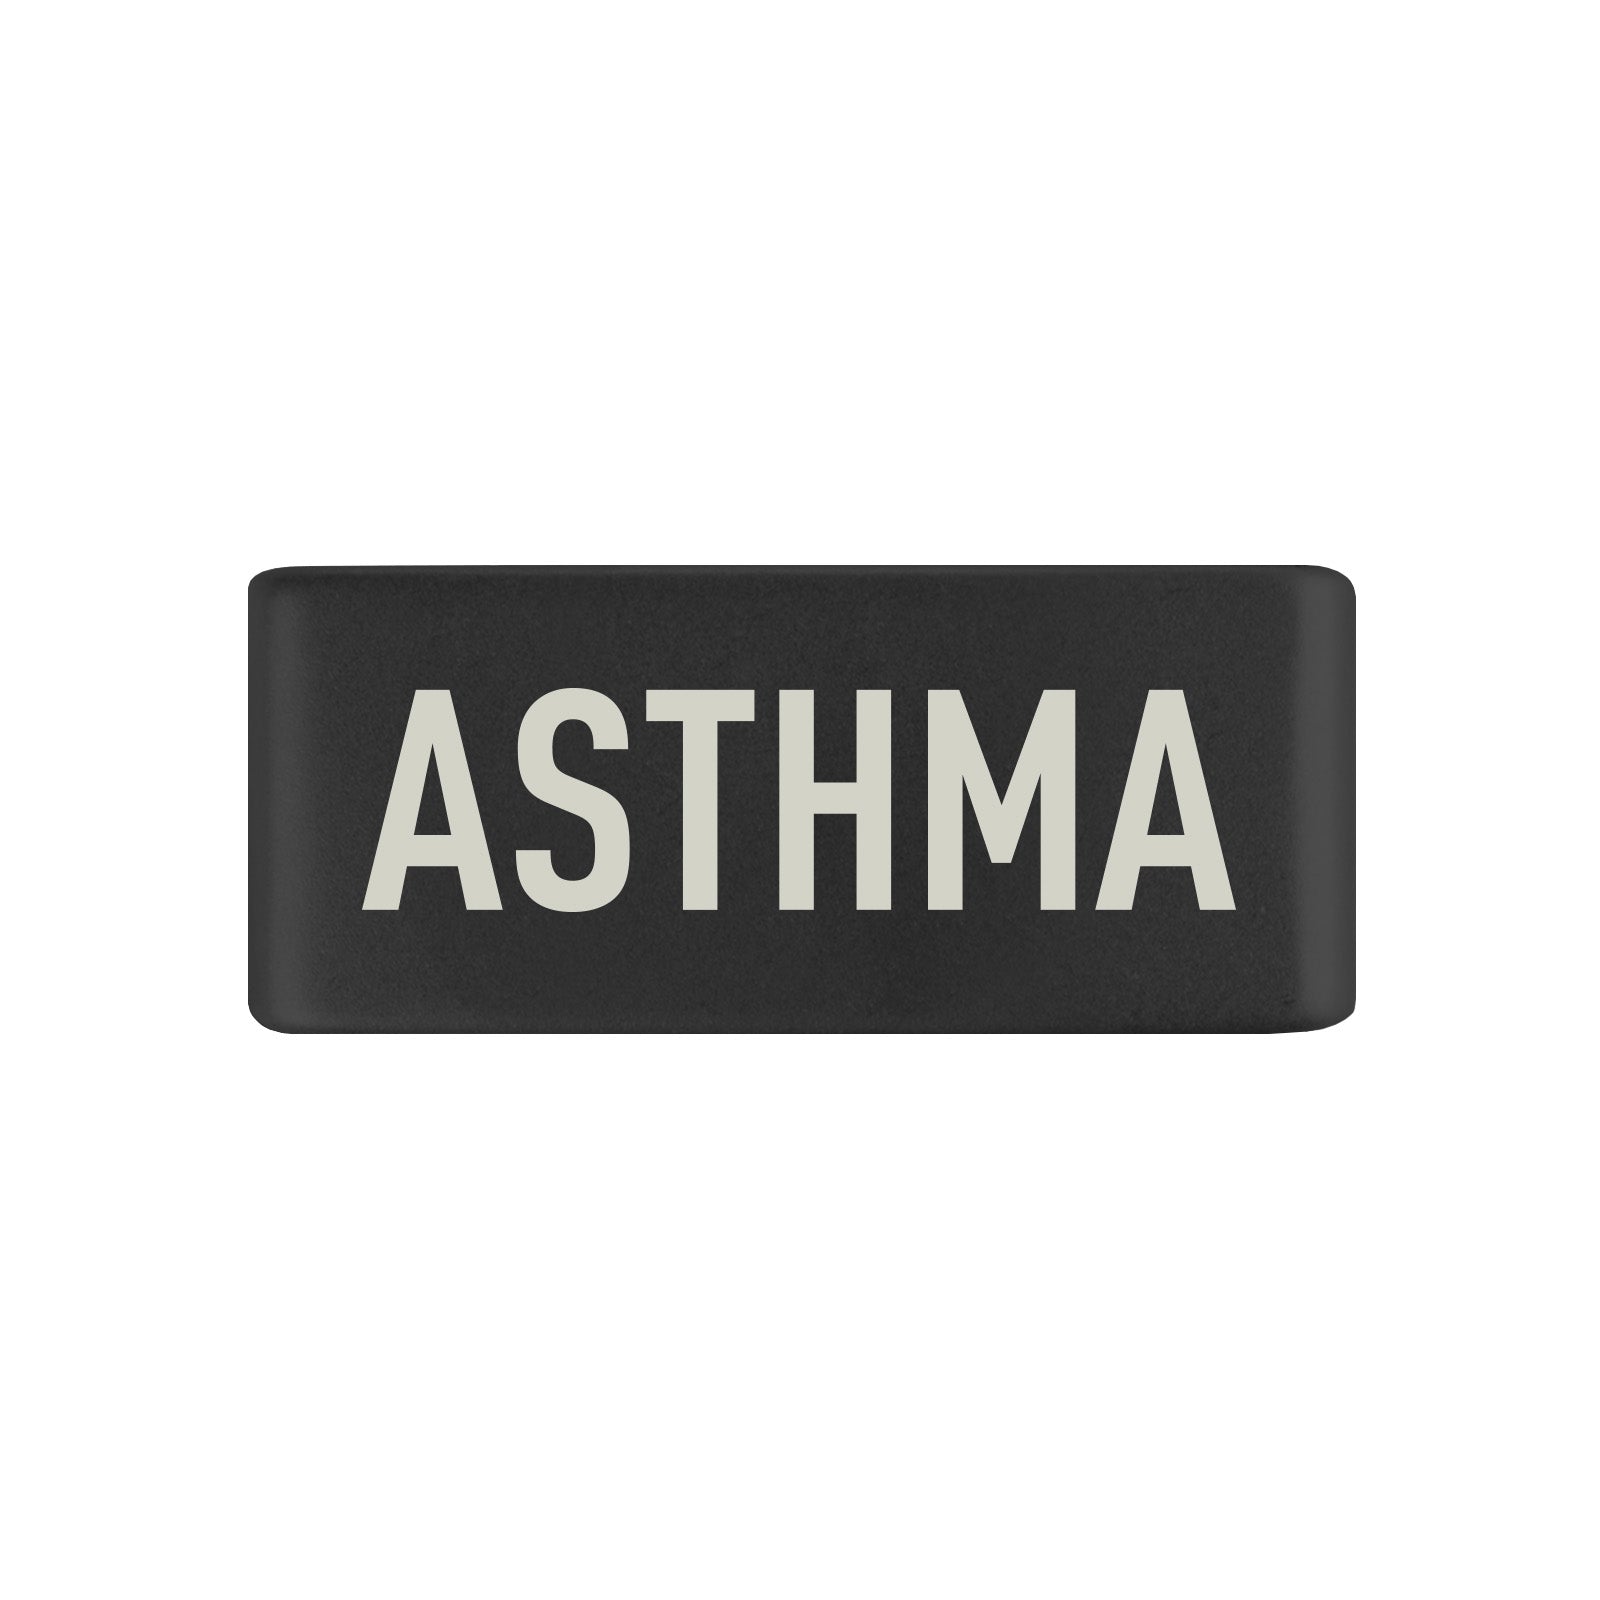 Asthma Badge Badge 13mm - ROAD iD